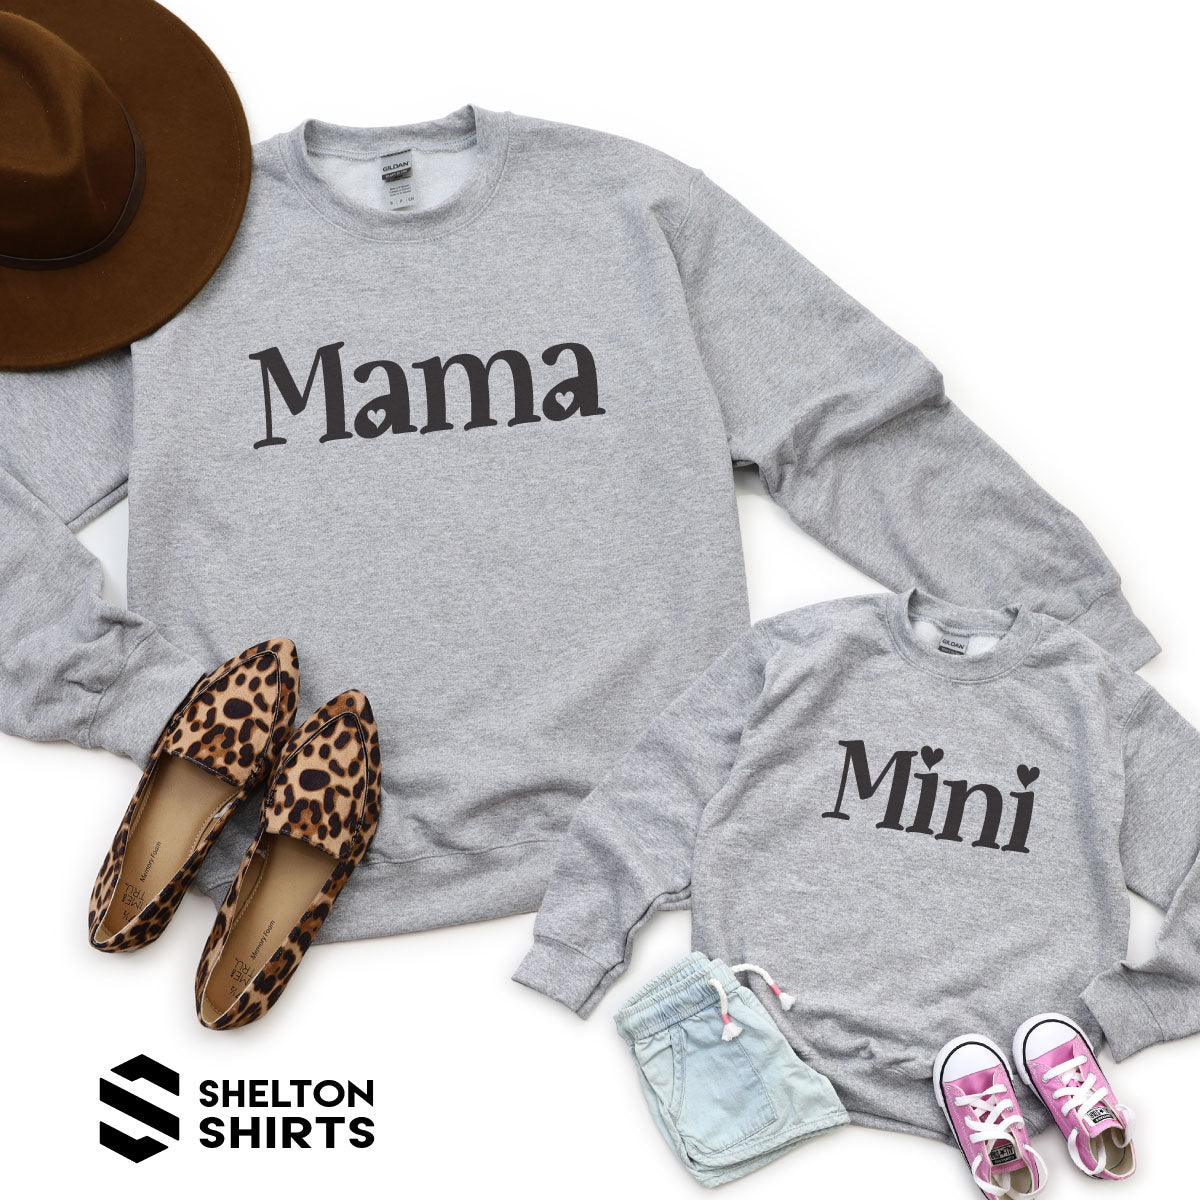 Mama and Mini with Hearts Super Comfy Crew Neck Heather Grey Sweatshirts